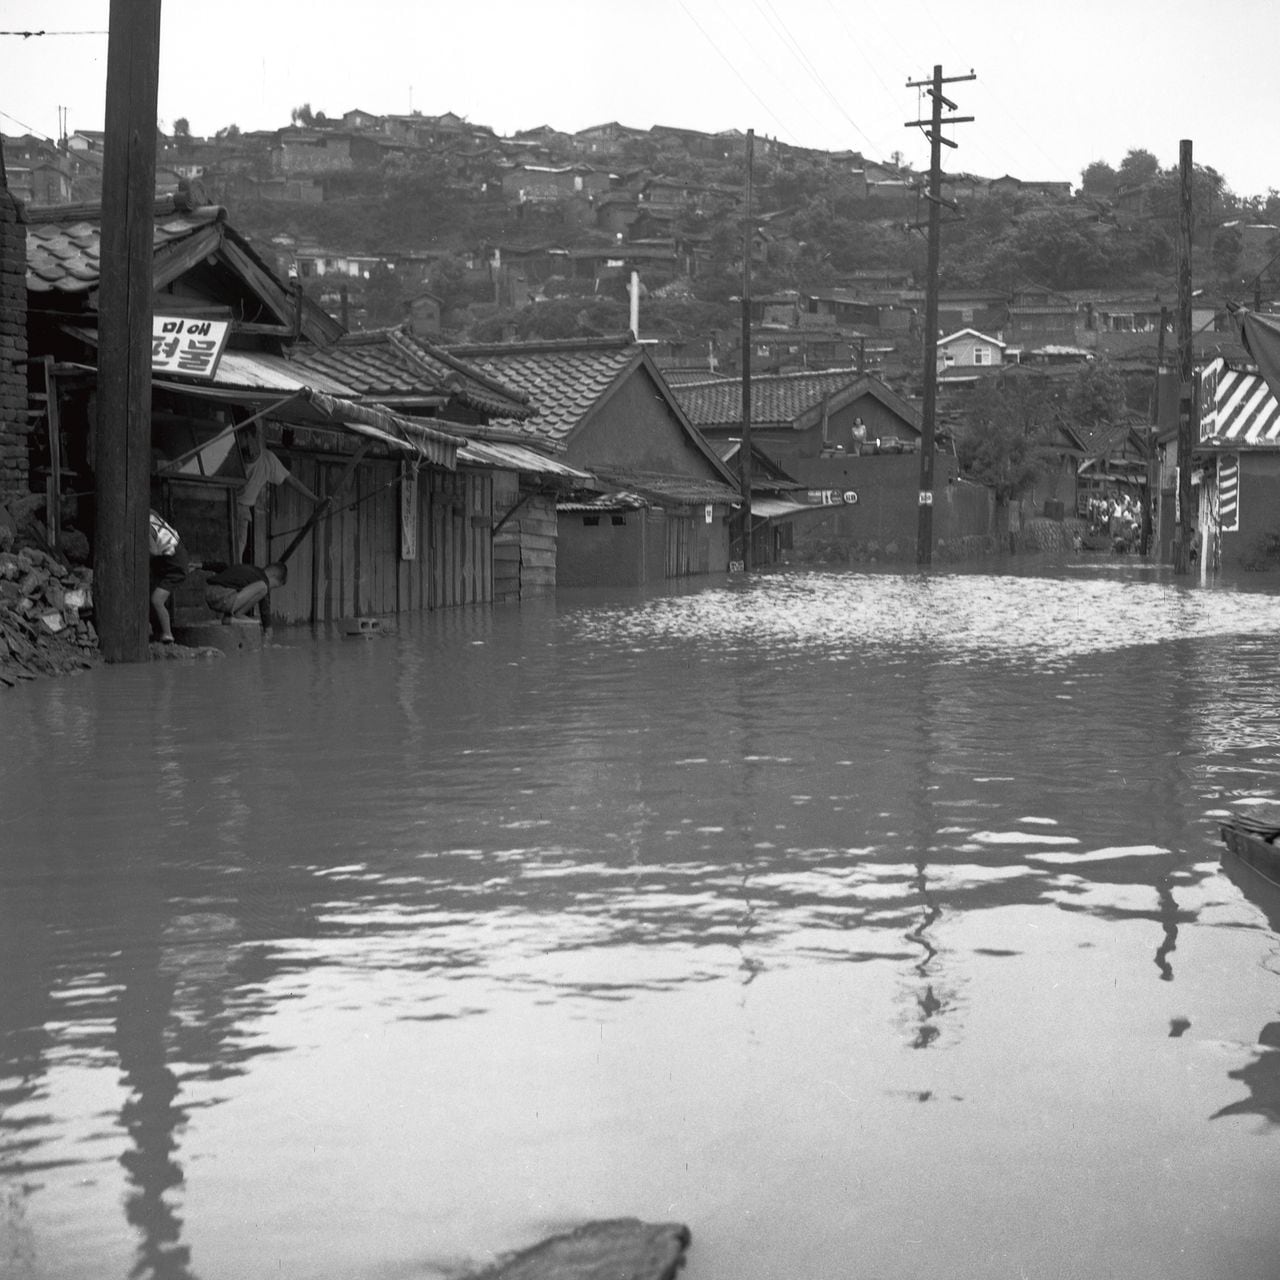 1966년 7월 16일 중부지방 집중호우로 물에 잠긴 서부이촌동 가옥들의 모습. /서울역사아카이브 <전체화면 버튼을 클릭하면 좀 더 생생하게 볼 수 있습니다.>